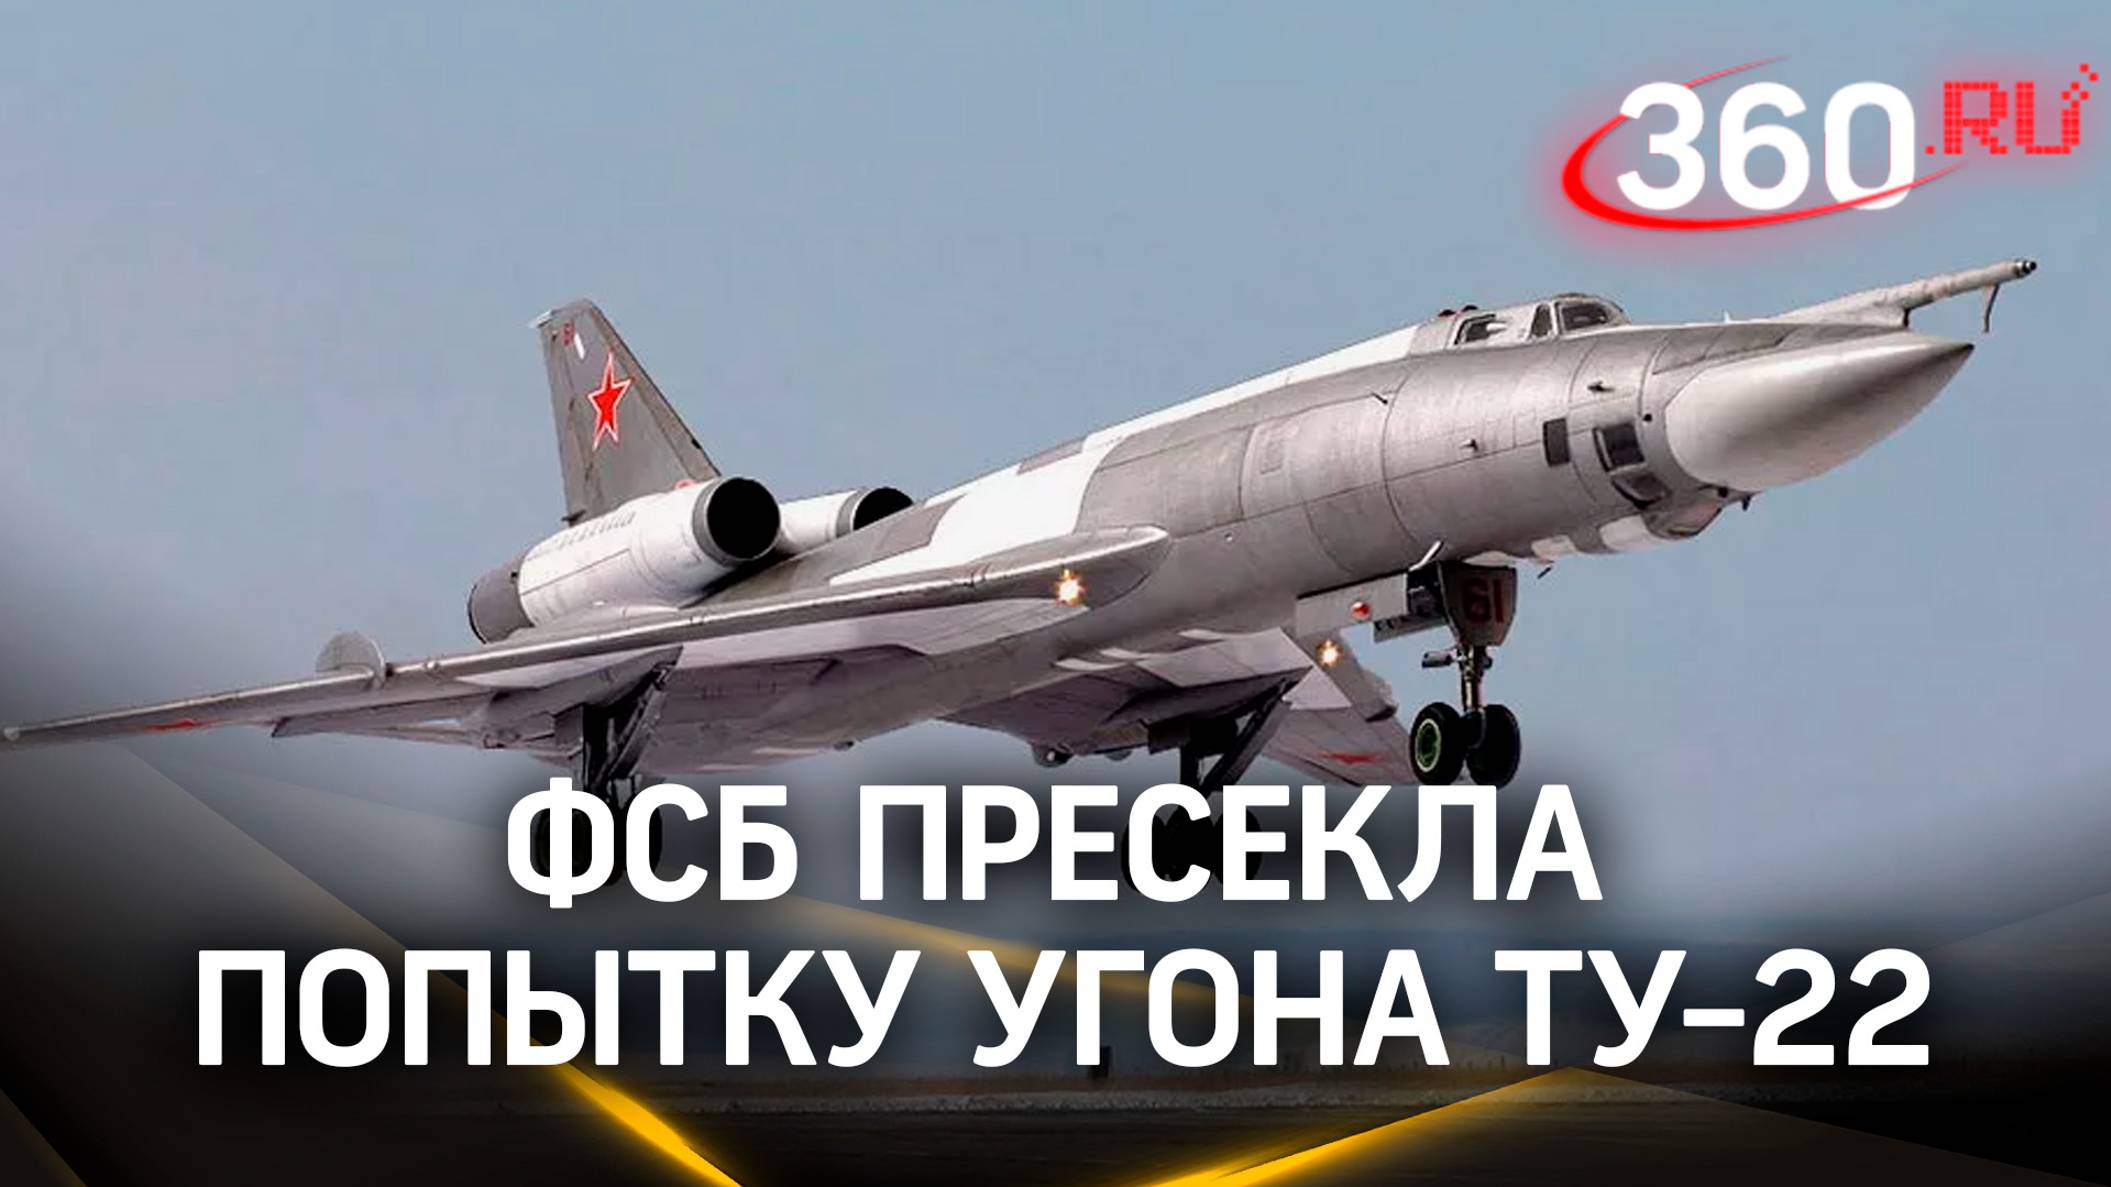 ФСБ пресекла попытку угона на Украину российского бомбардировщика ТУ-22 с ядерным оружием